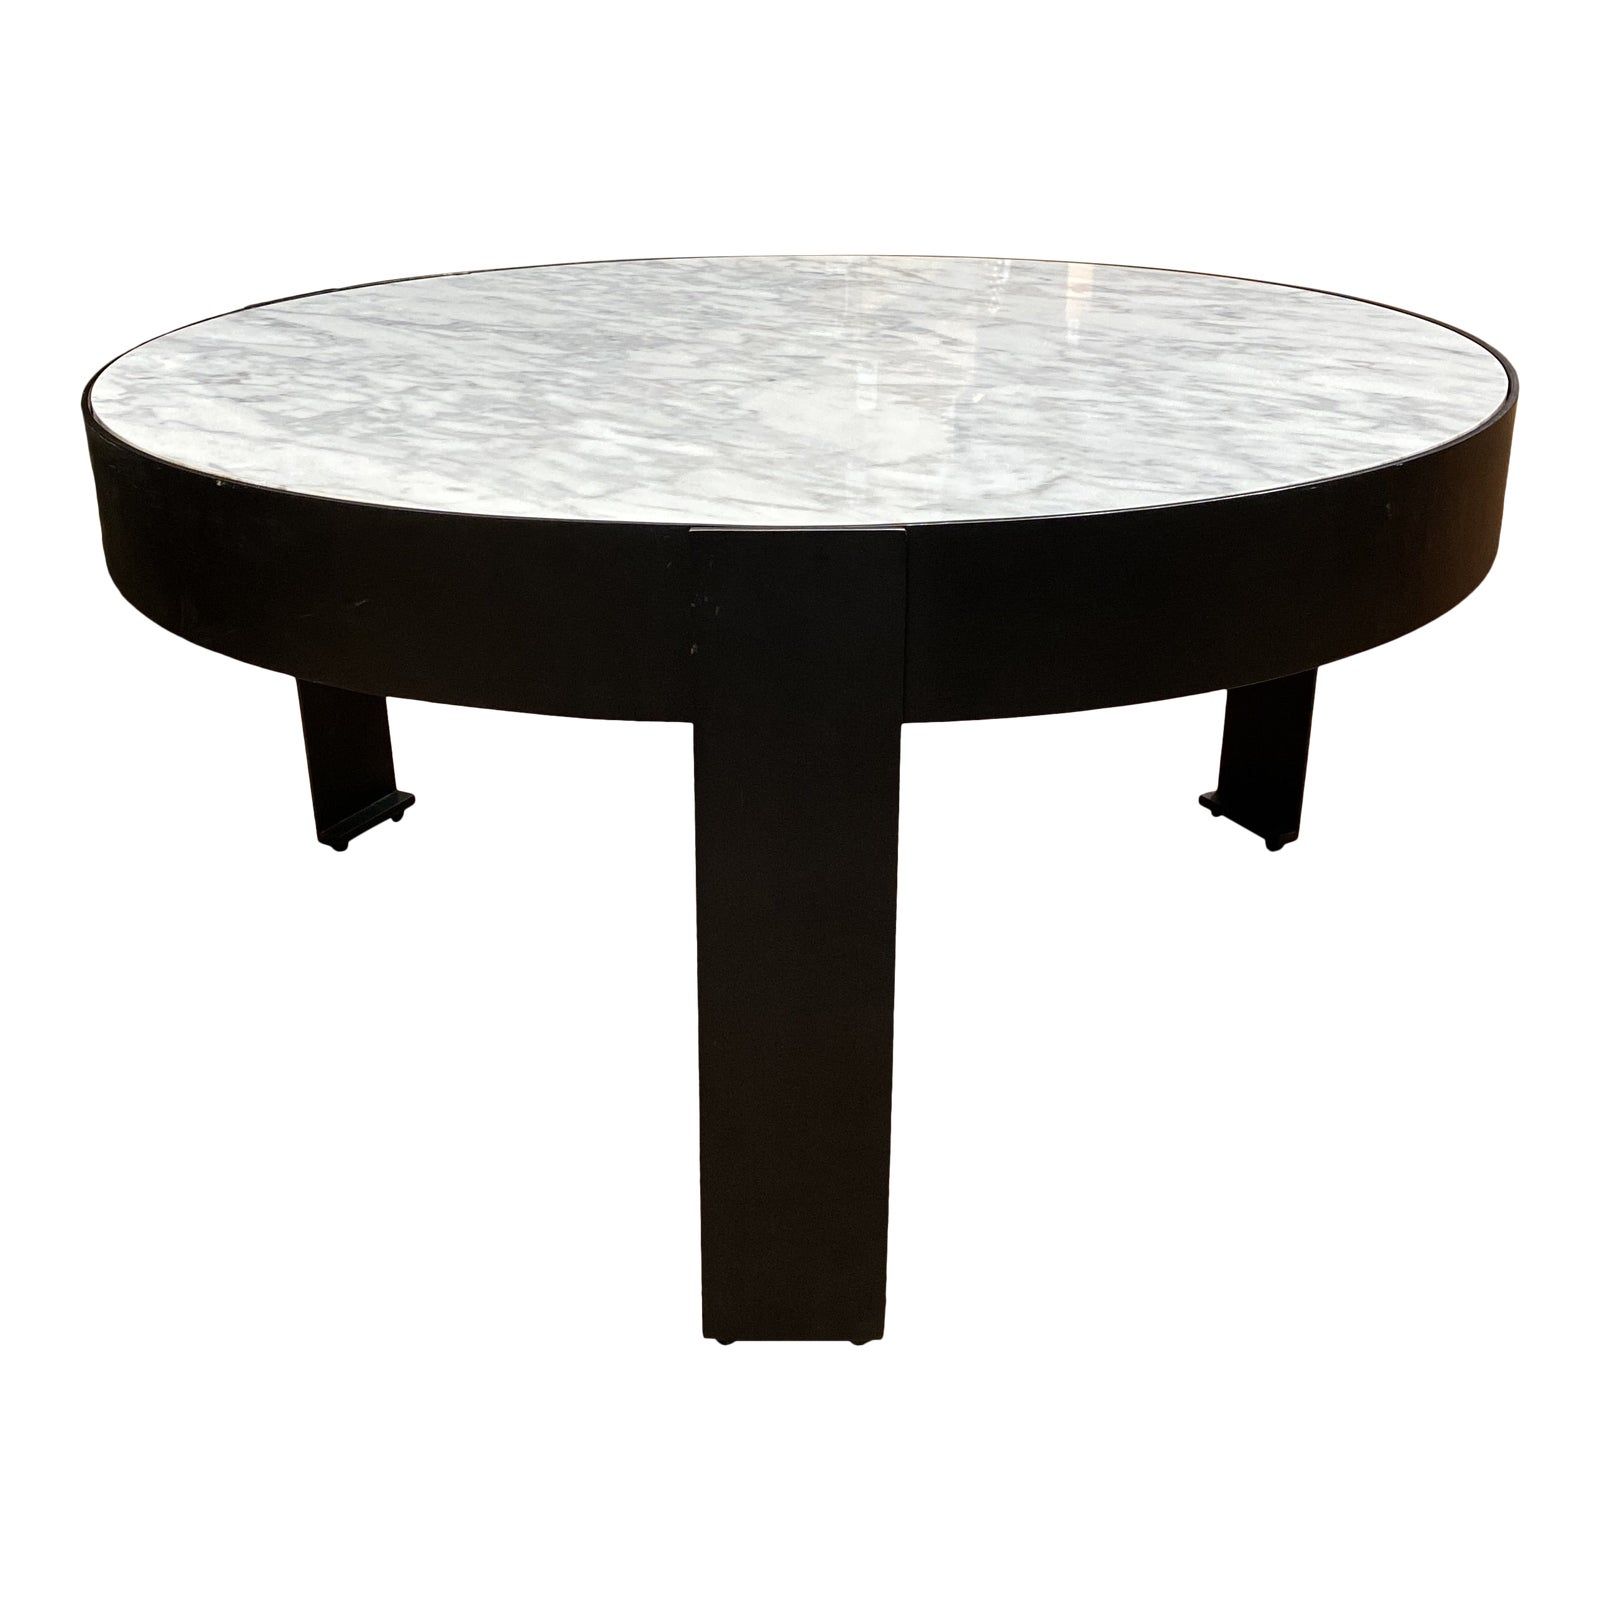 New Kelly Wearstler Round White Marble + Iron Coffee Table Pertaining To Round Iron Coffee Tables (View 11 of 15)